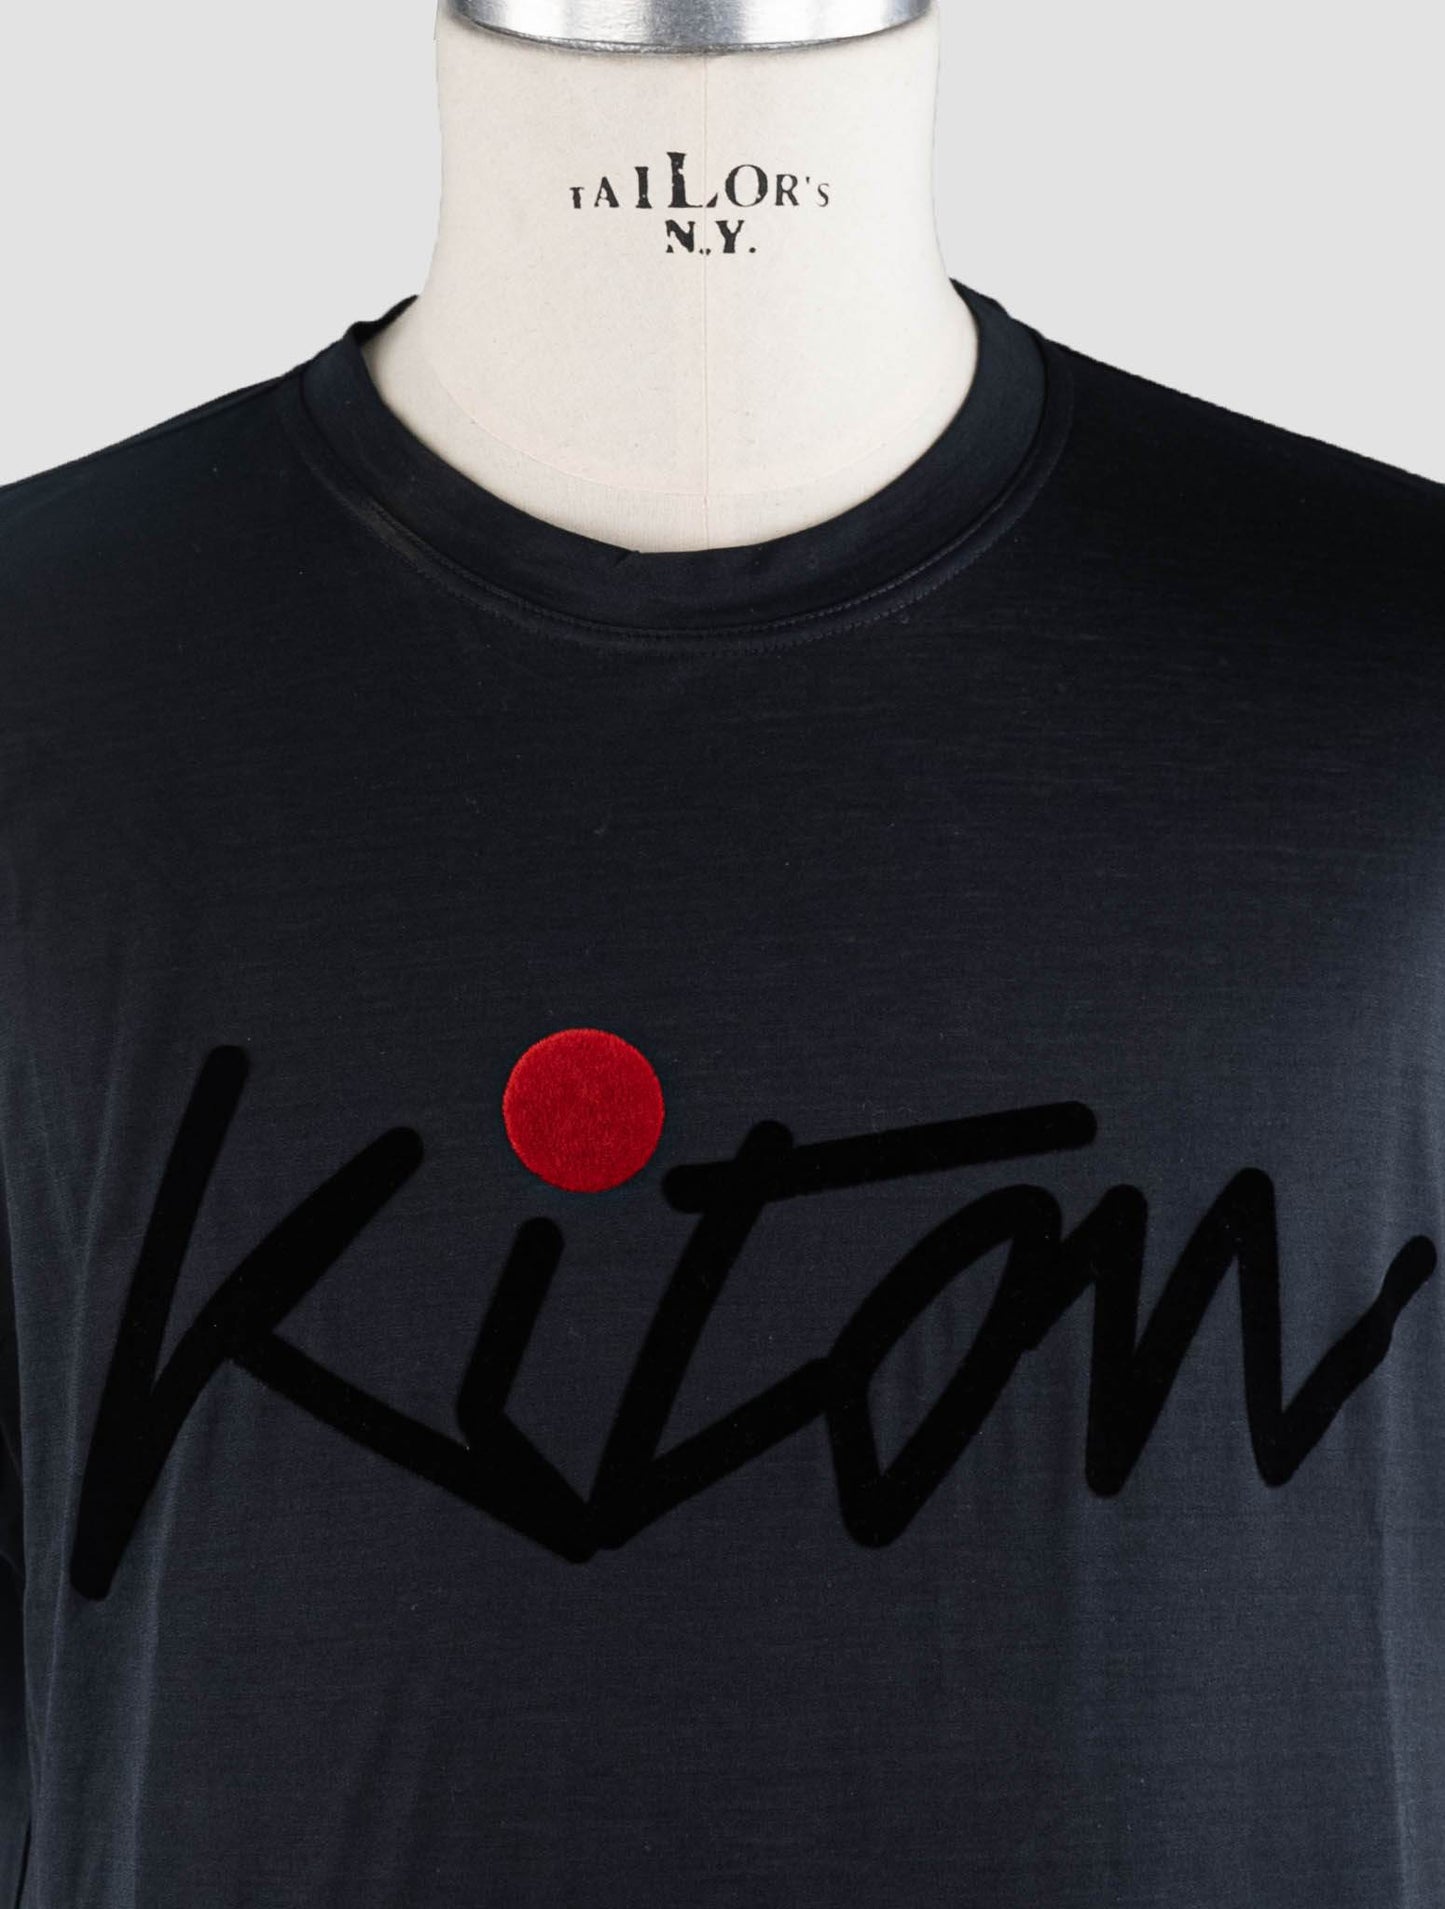 Kiton sort bomuld T-shirt